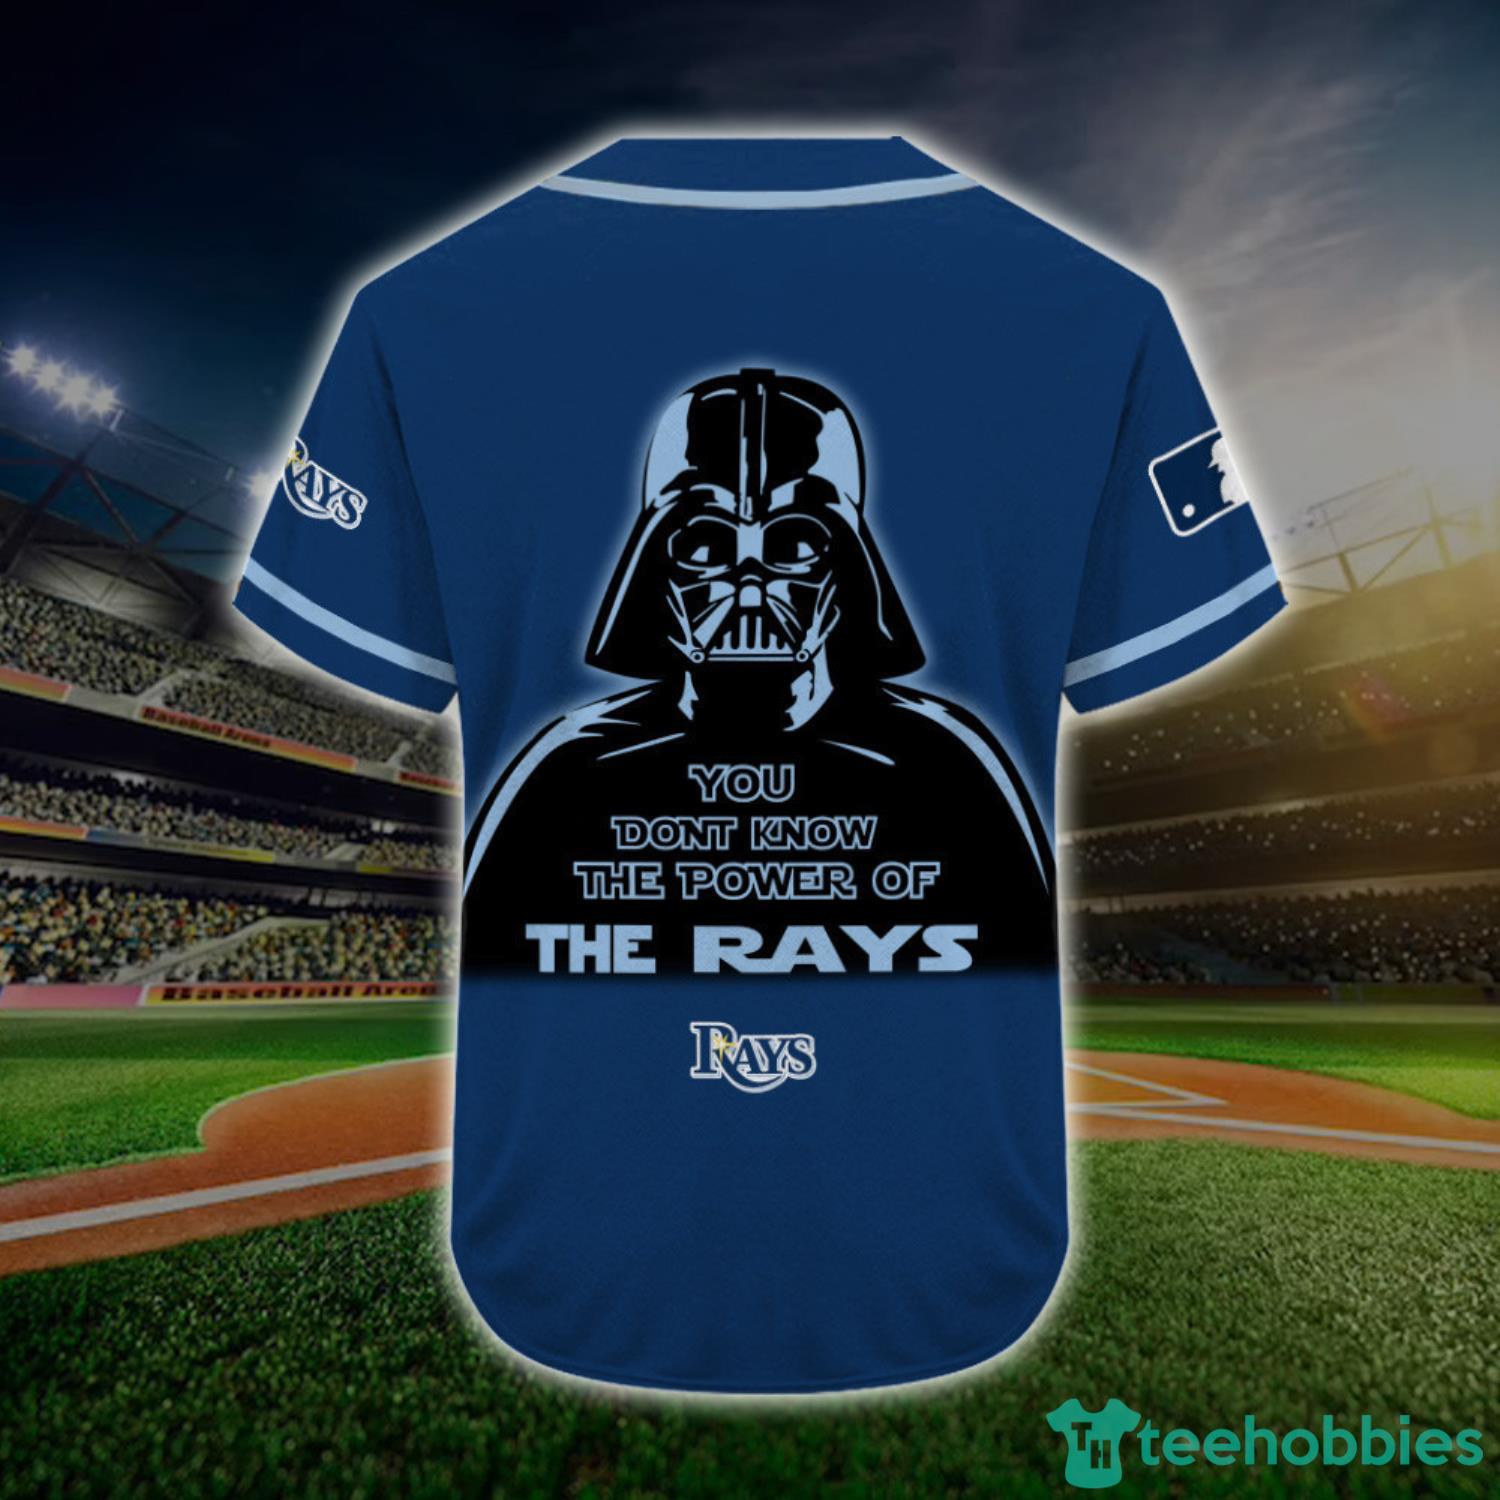 Custom Name And Number Tampa Bay Rays Darth Vader Star Wars Baseball Jersey  Shirt Navy